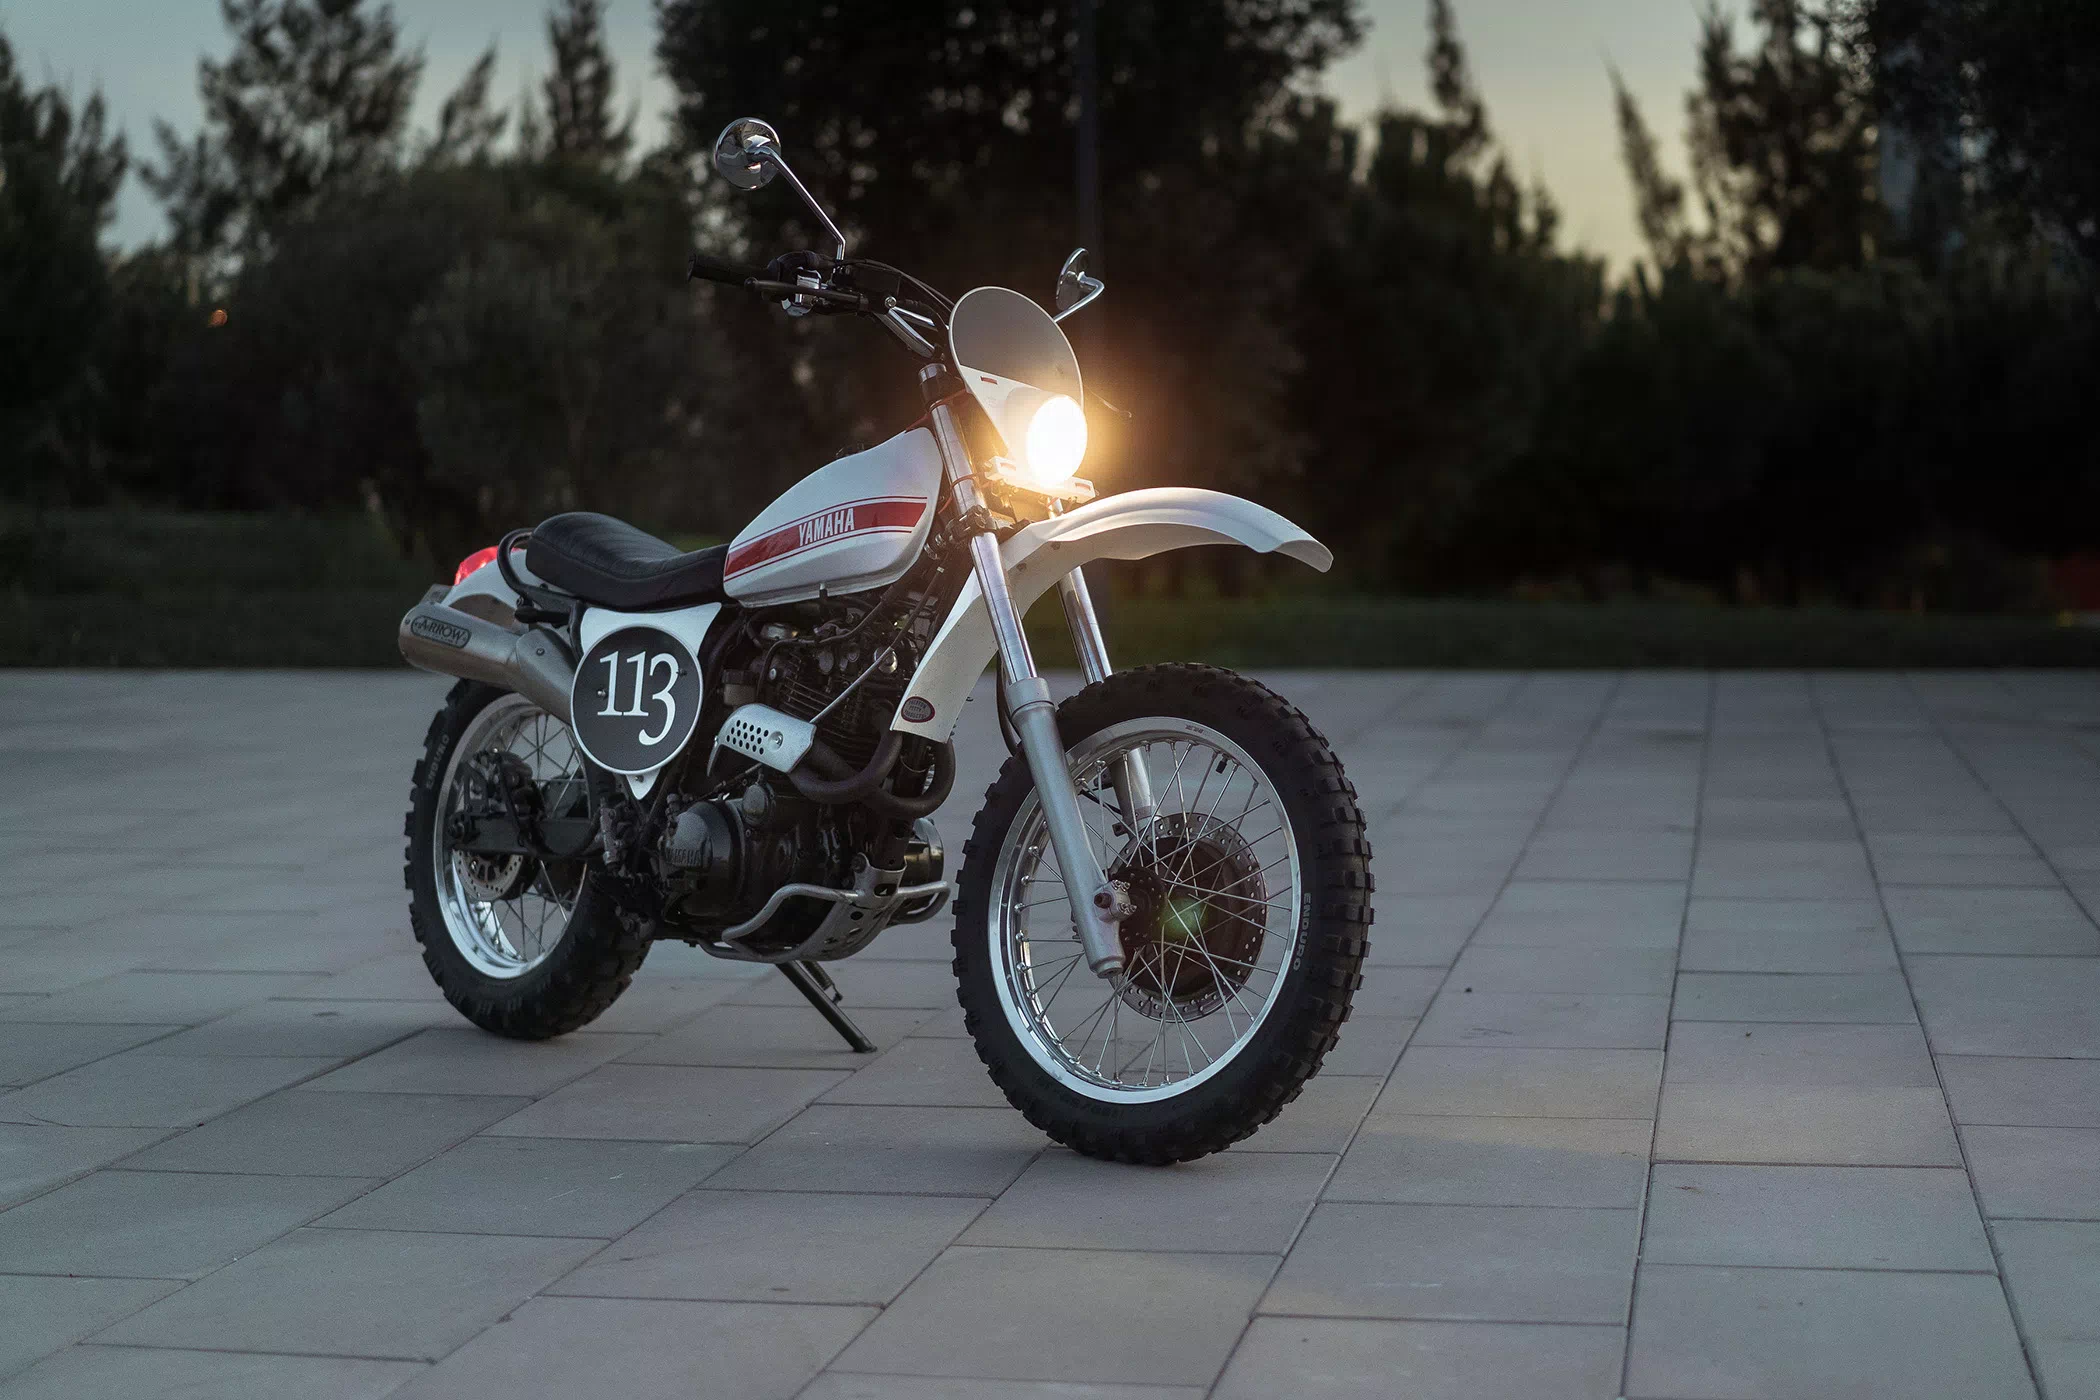 Unik-Motorcycles-Yamaha-XT-600-113-013